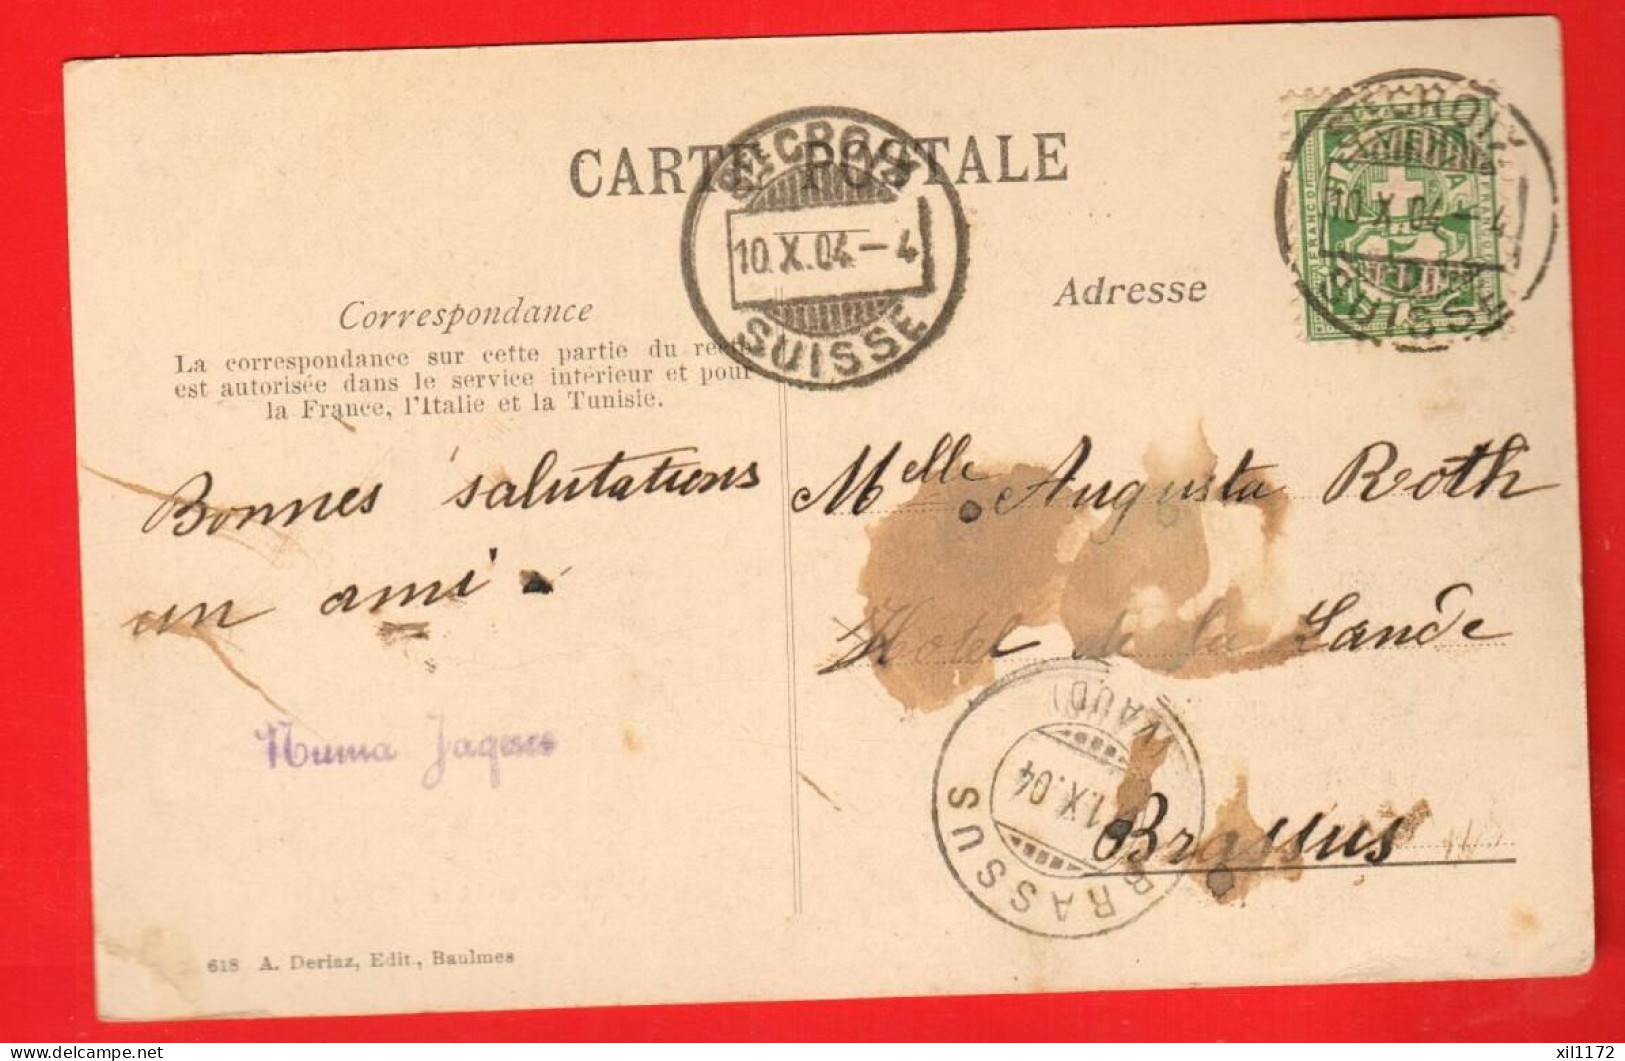 ZSH-38 Sainte-Croix Et Les Alpes  Circulé 1904  Vers Le Brassus. Tache Au Dos. Scan Du Dos - Sainte-Croix 